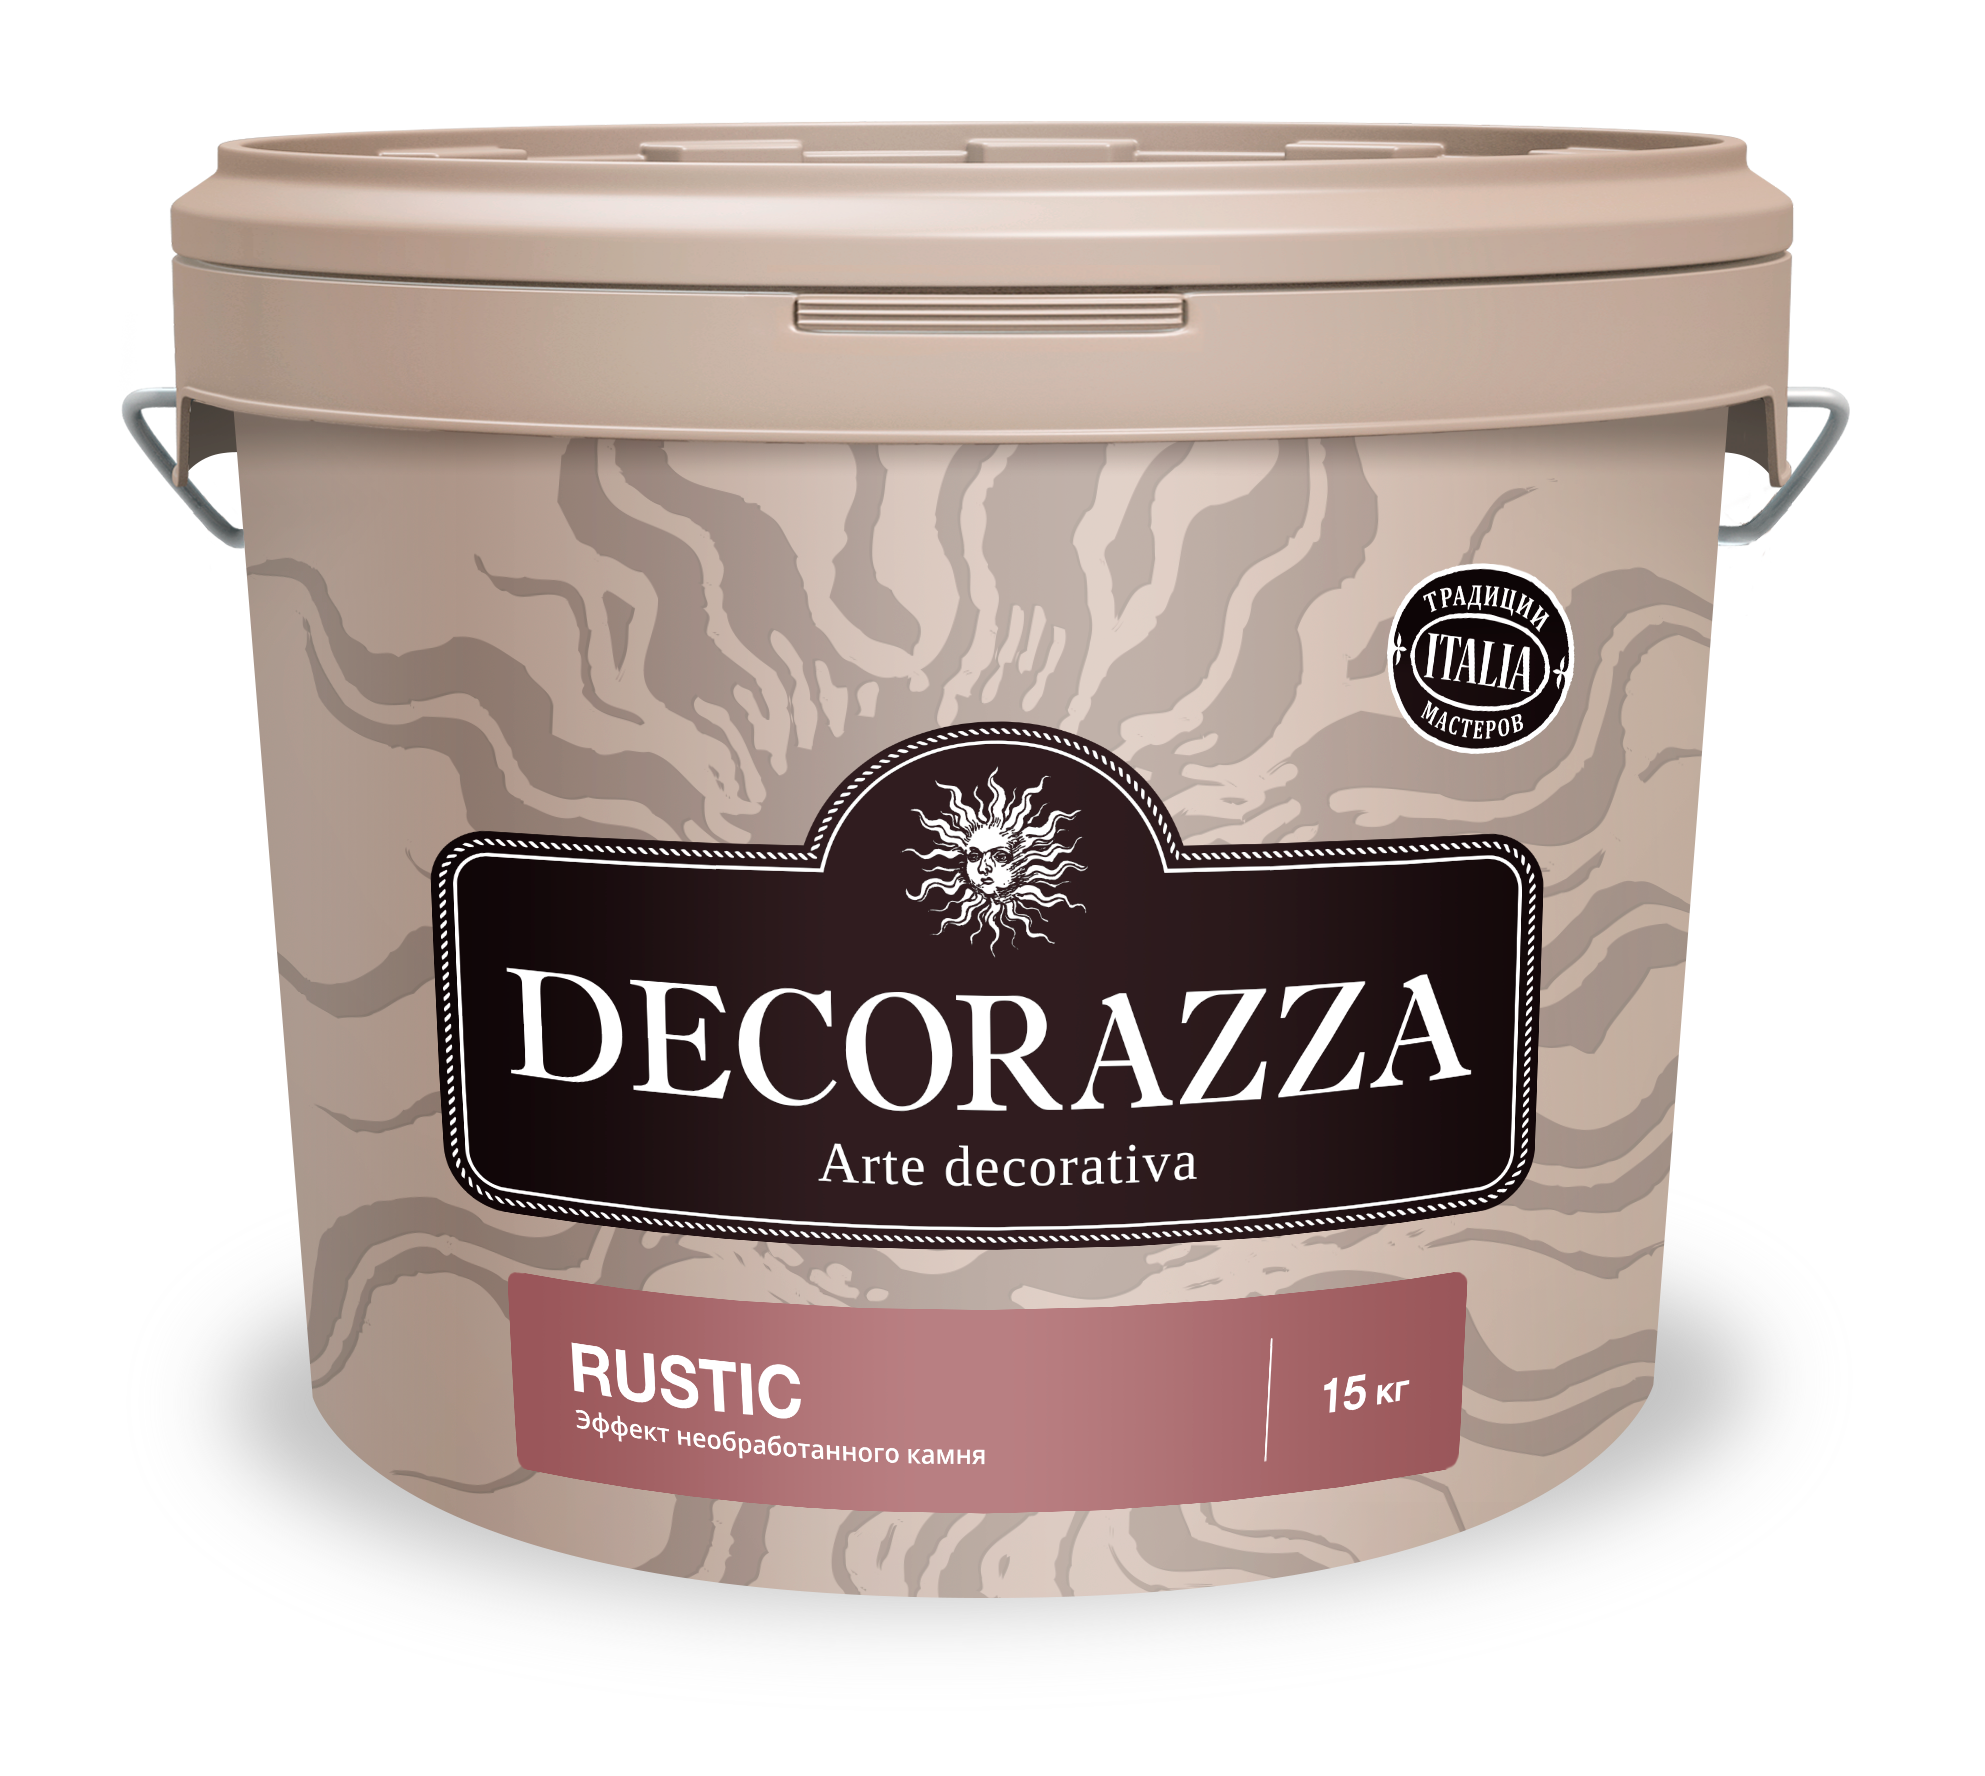 Декоративное покрытие Decorazza Rustic с эффектом грубого обработанного камня 15 кг